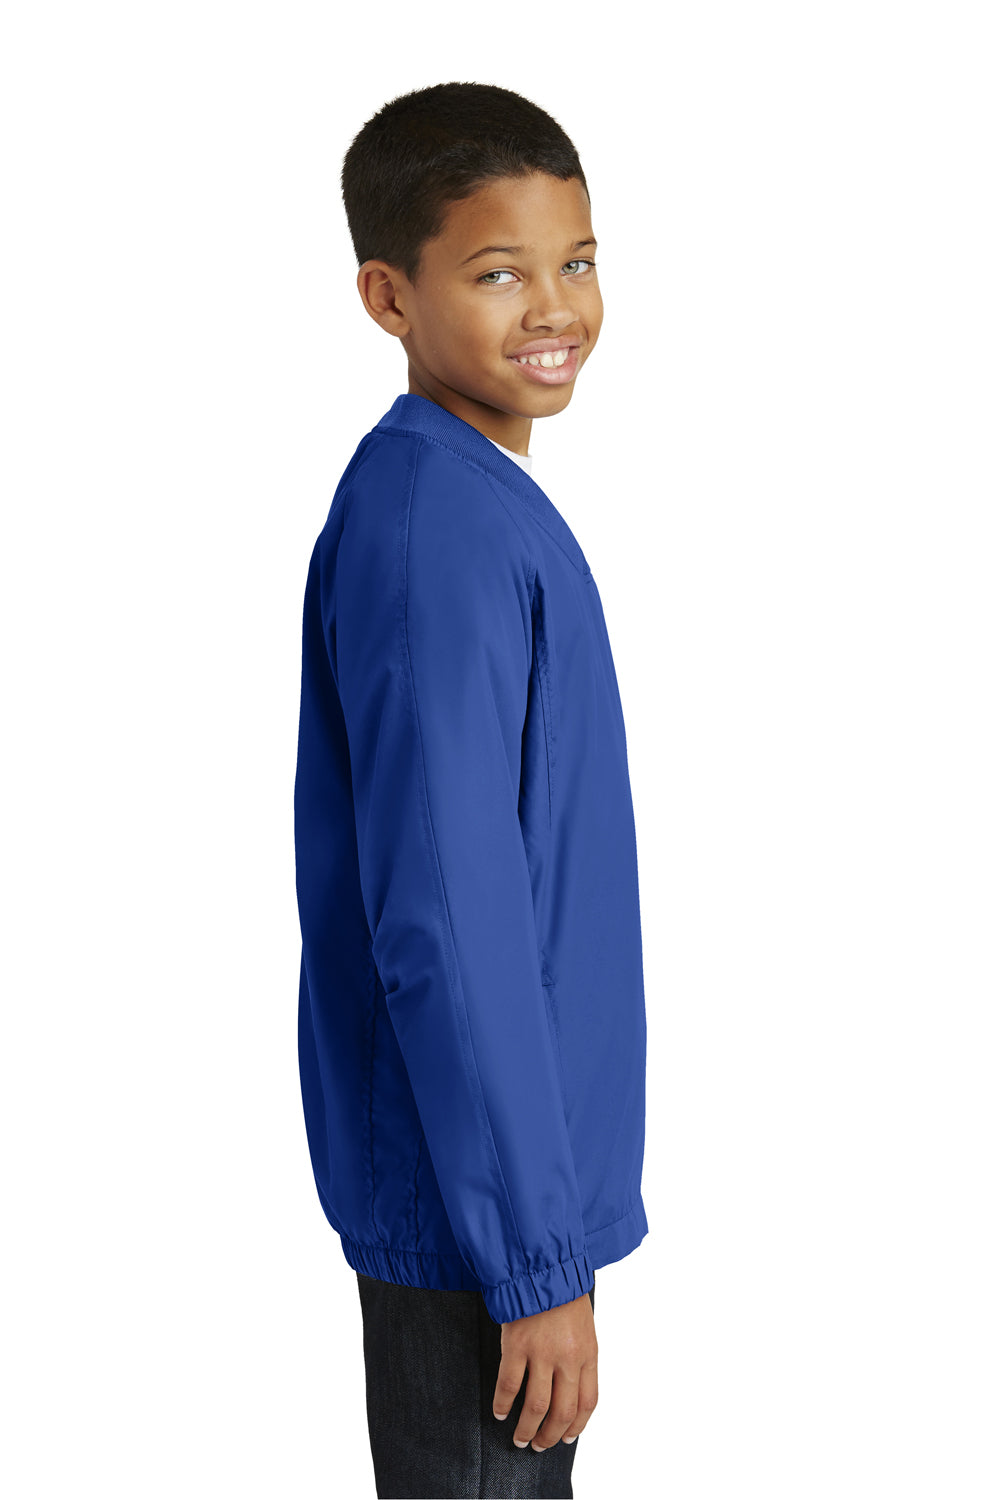 Sport-Tek YST72 Youth Water Resistant V-Neck Wind Jacket Royal Blue Side